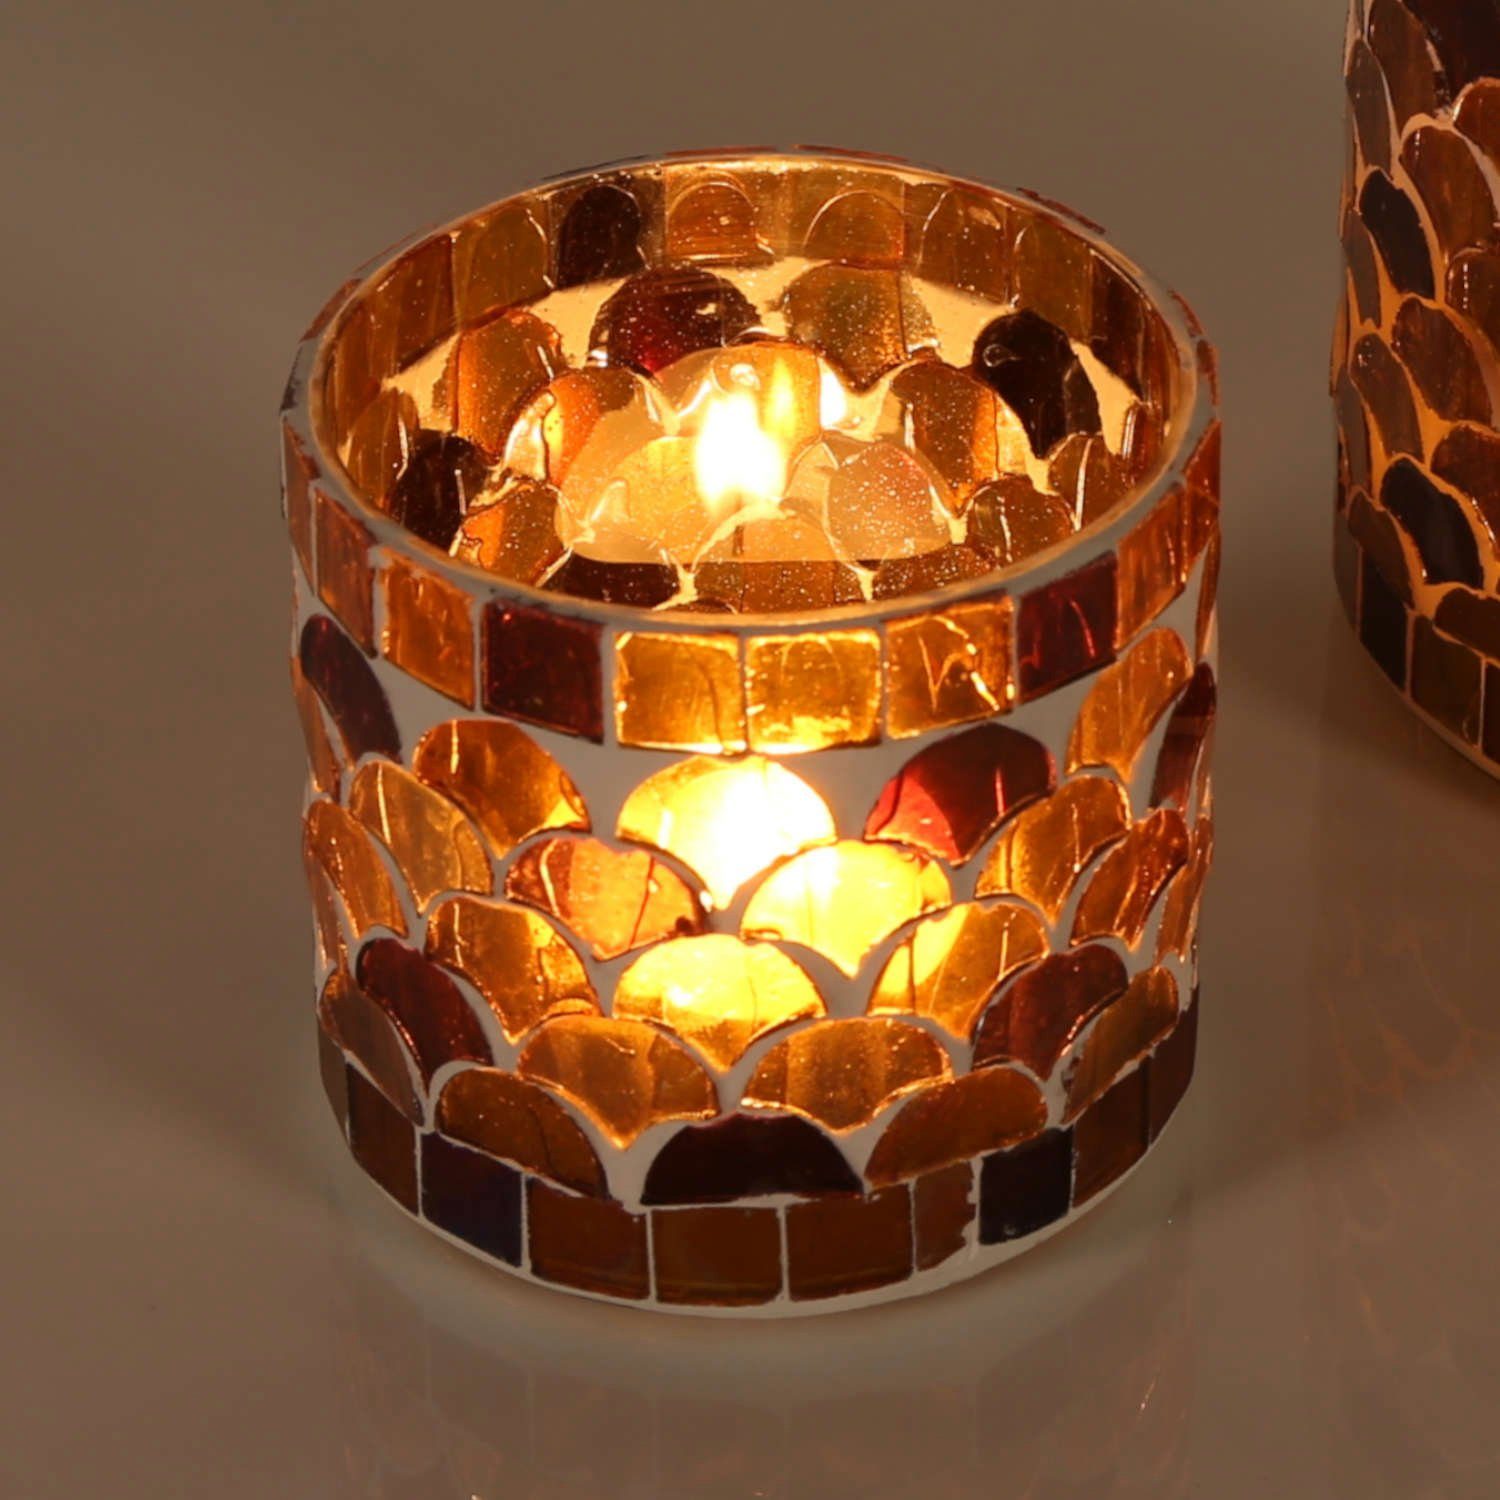 Casa Moro Windlicht Orientalisches Mosaik Windlicht Athen Gelb aus Glas handgefertigt (Boho Teelichthalter Kerzenständer Kerzenhalter, Glaswindlicht in den Größen S und M oder 2er Set bestellbar), Kunsthandwerk pur für einfach schöner wohnen